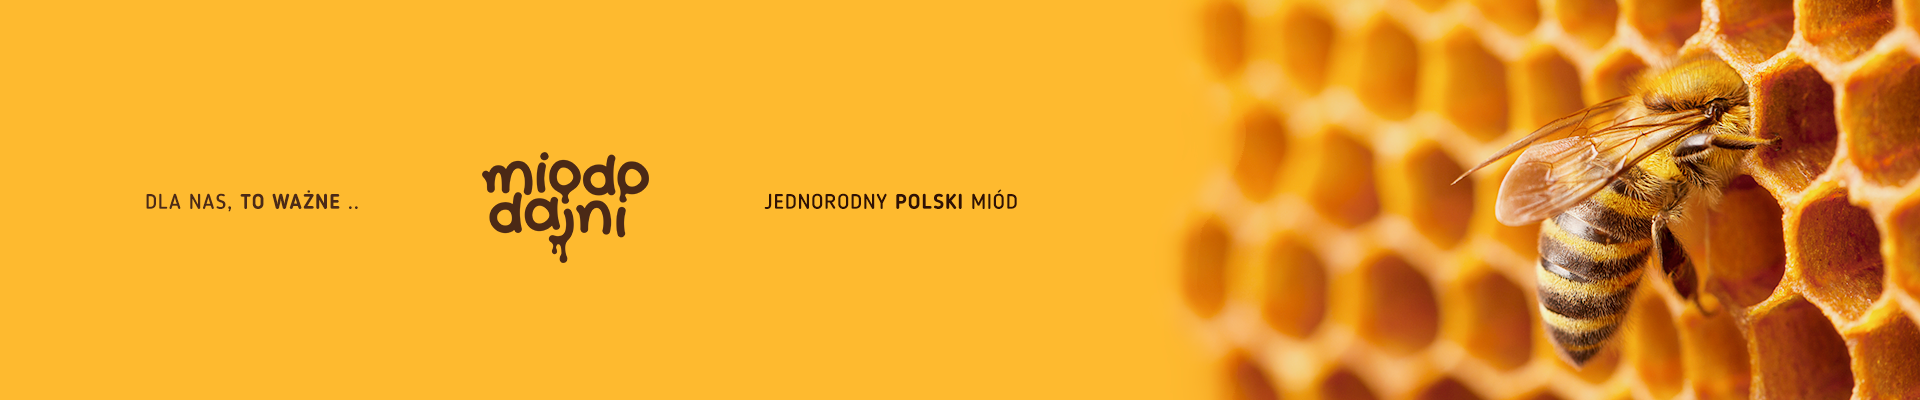 miododajni-jednorodny-polski-mi%C3%B3d.png